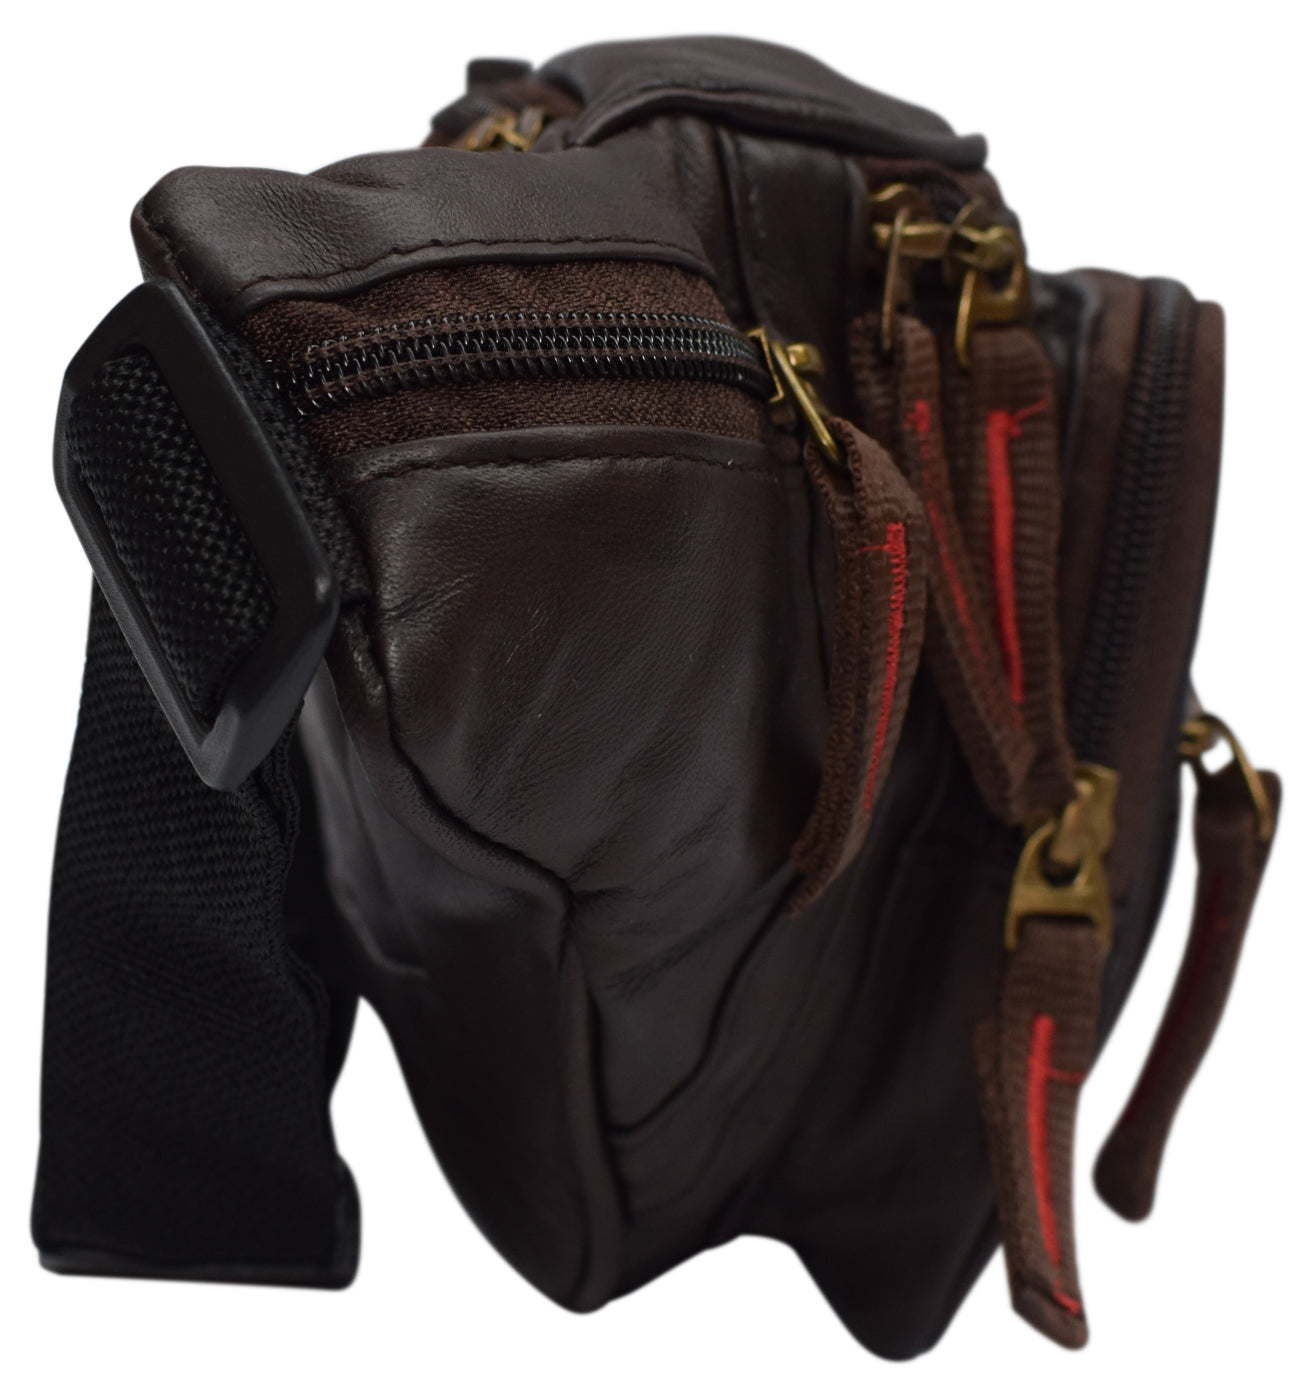 Vintage Leather Fanny Pack Mens Waist Bag Hip Pack Belt Bag Bumbag for